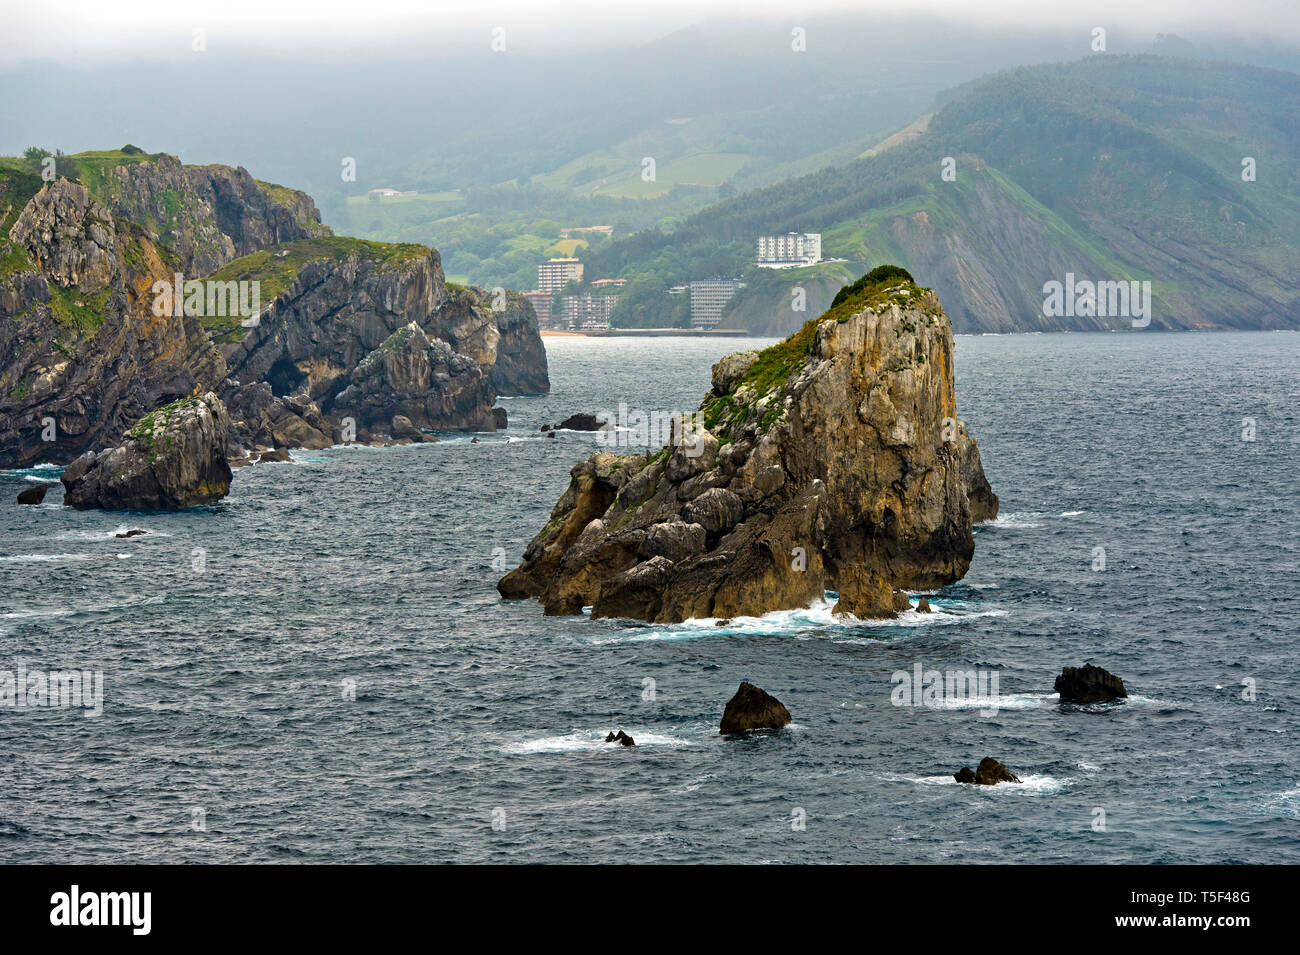 Rochers dans la mer au large de la falaise de la côte Costa Vasca, Golfe de Gascogne, Bakio, Pays Basque, Espagne Banque D'Images